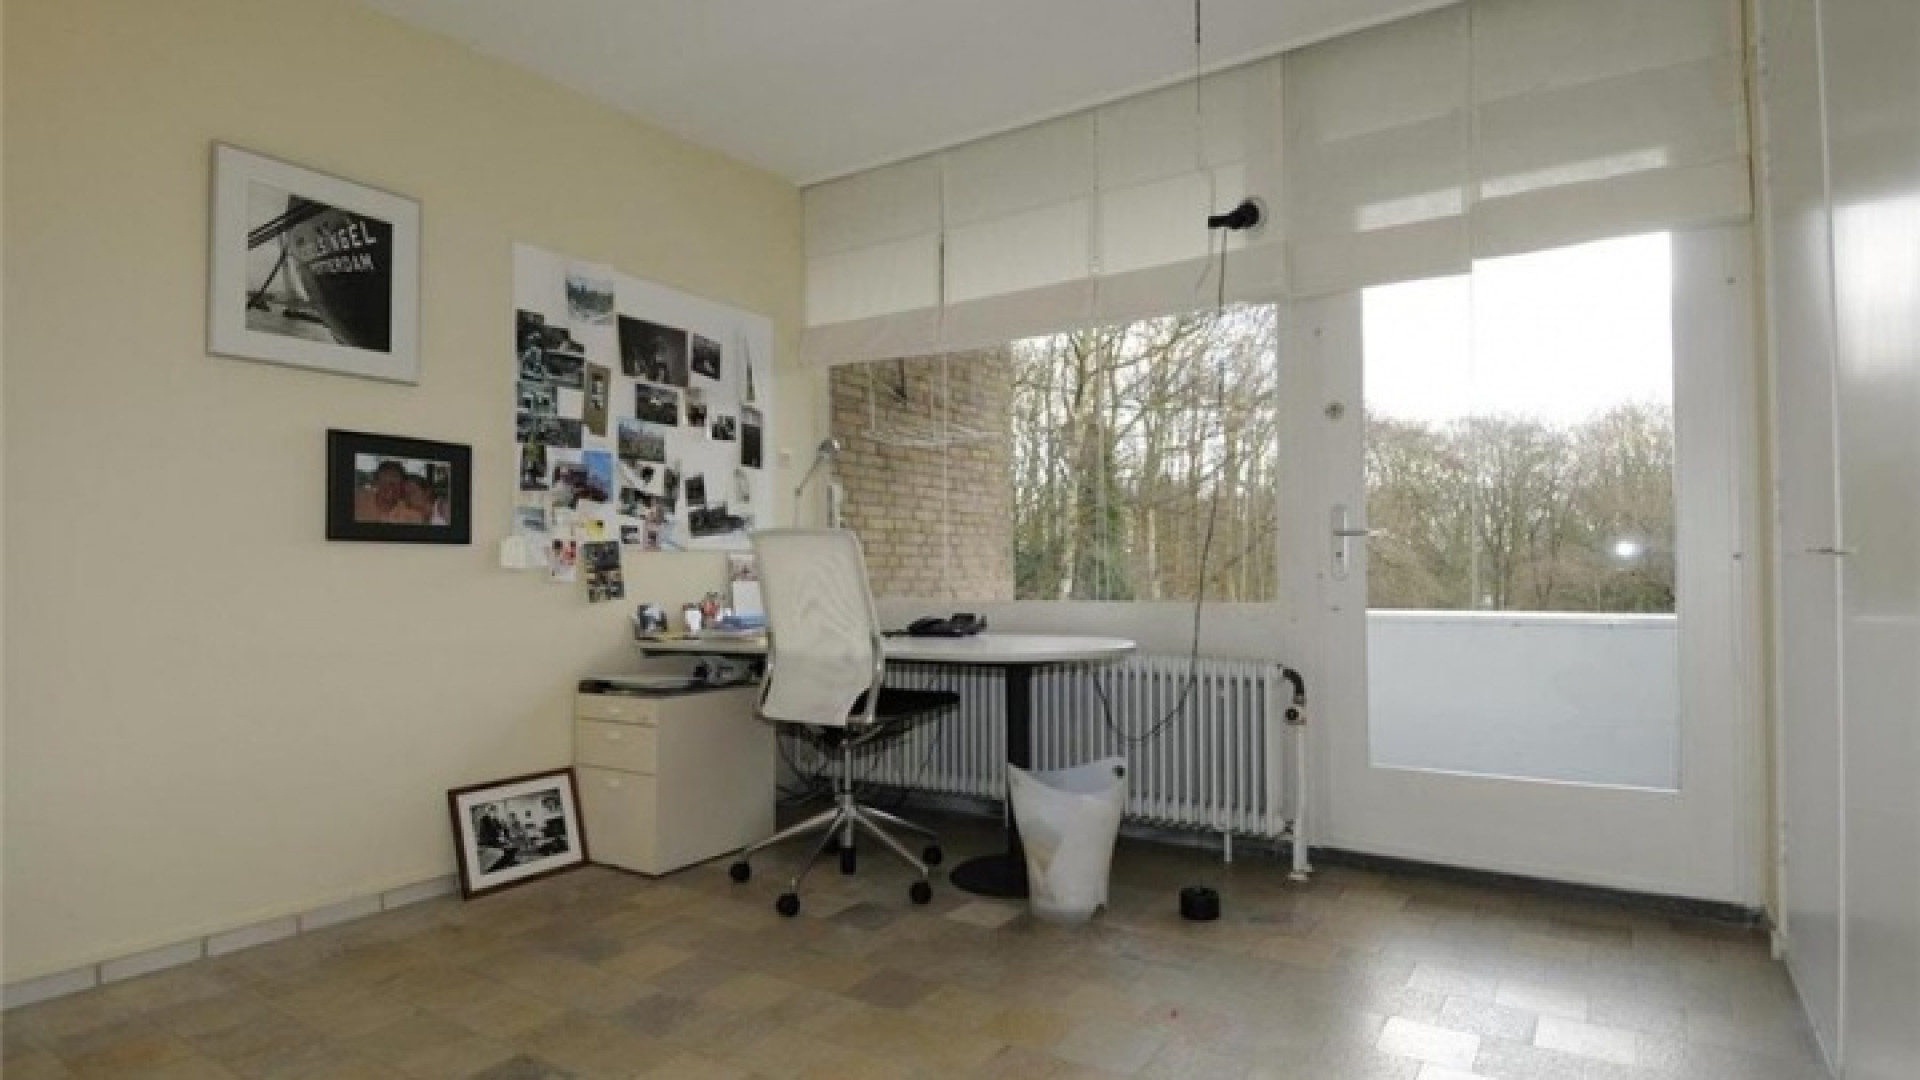 Totale prijsverlaging van half miljoen euro moet koper lokken voor villa Neelie Smit Kroes. Zie foto's! 18